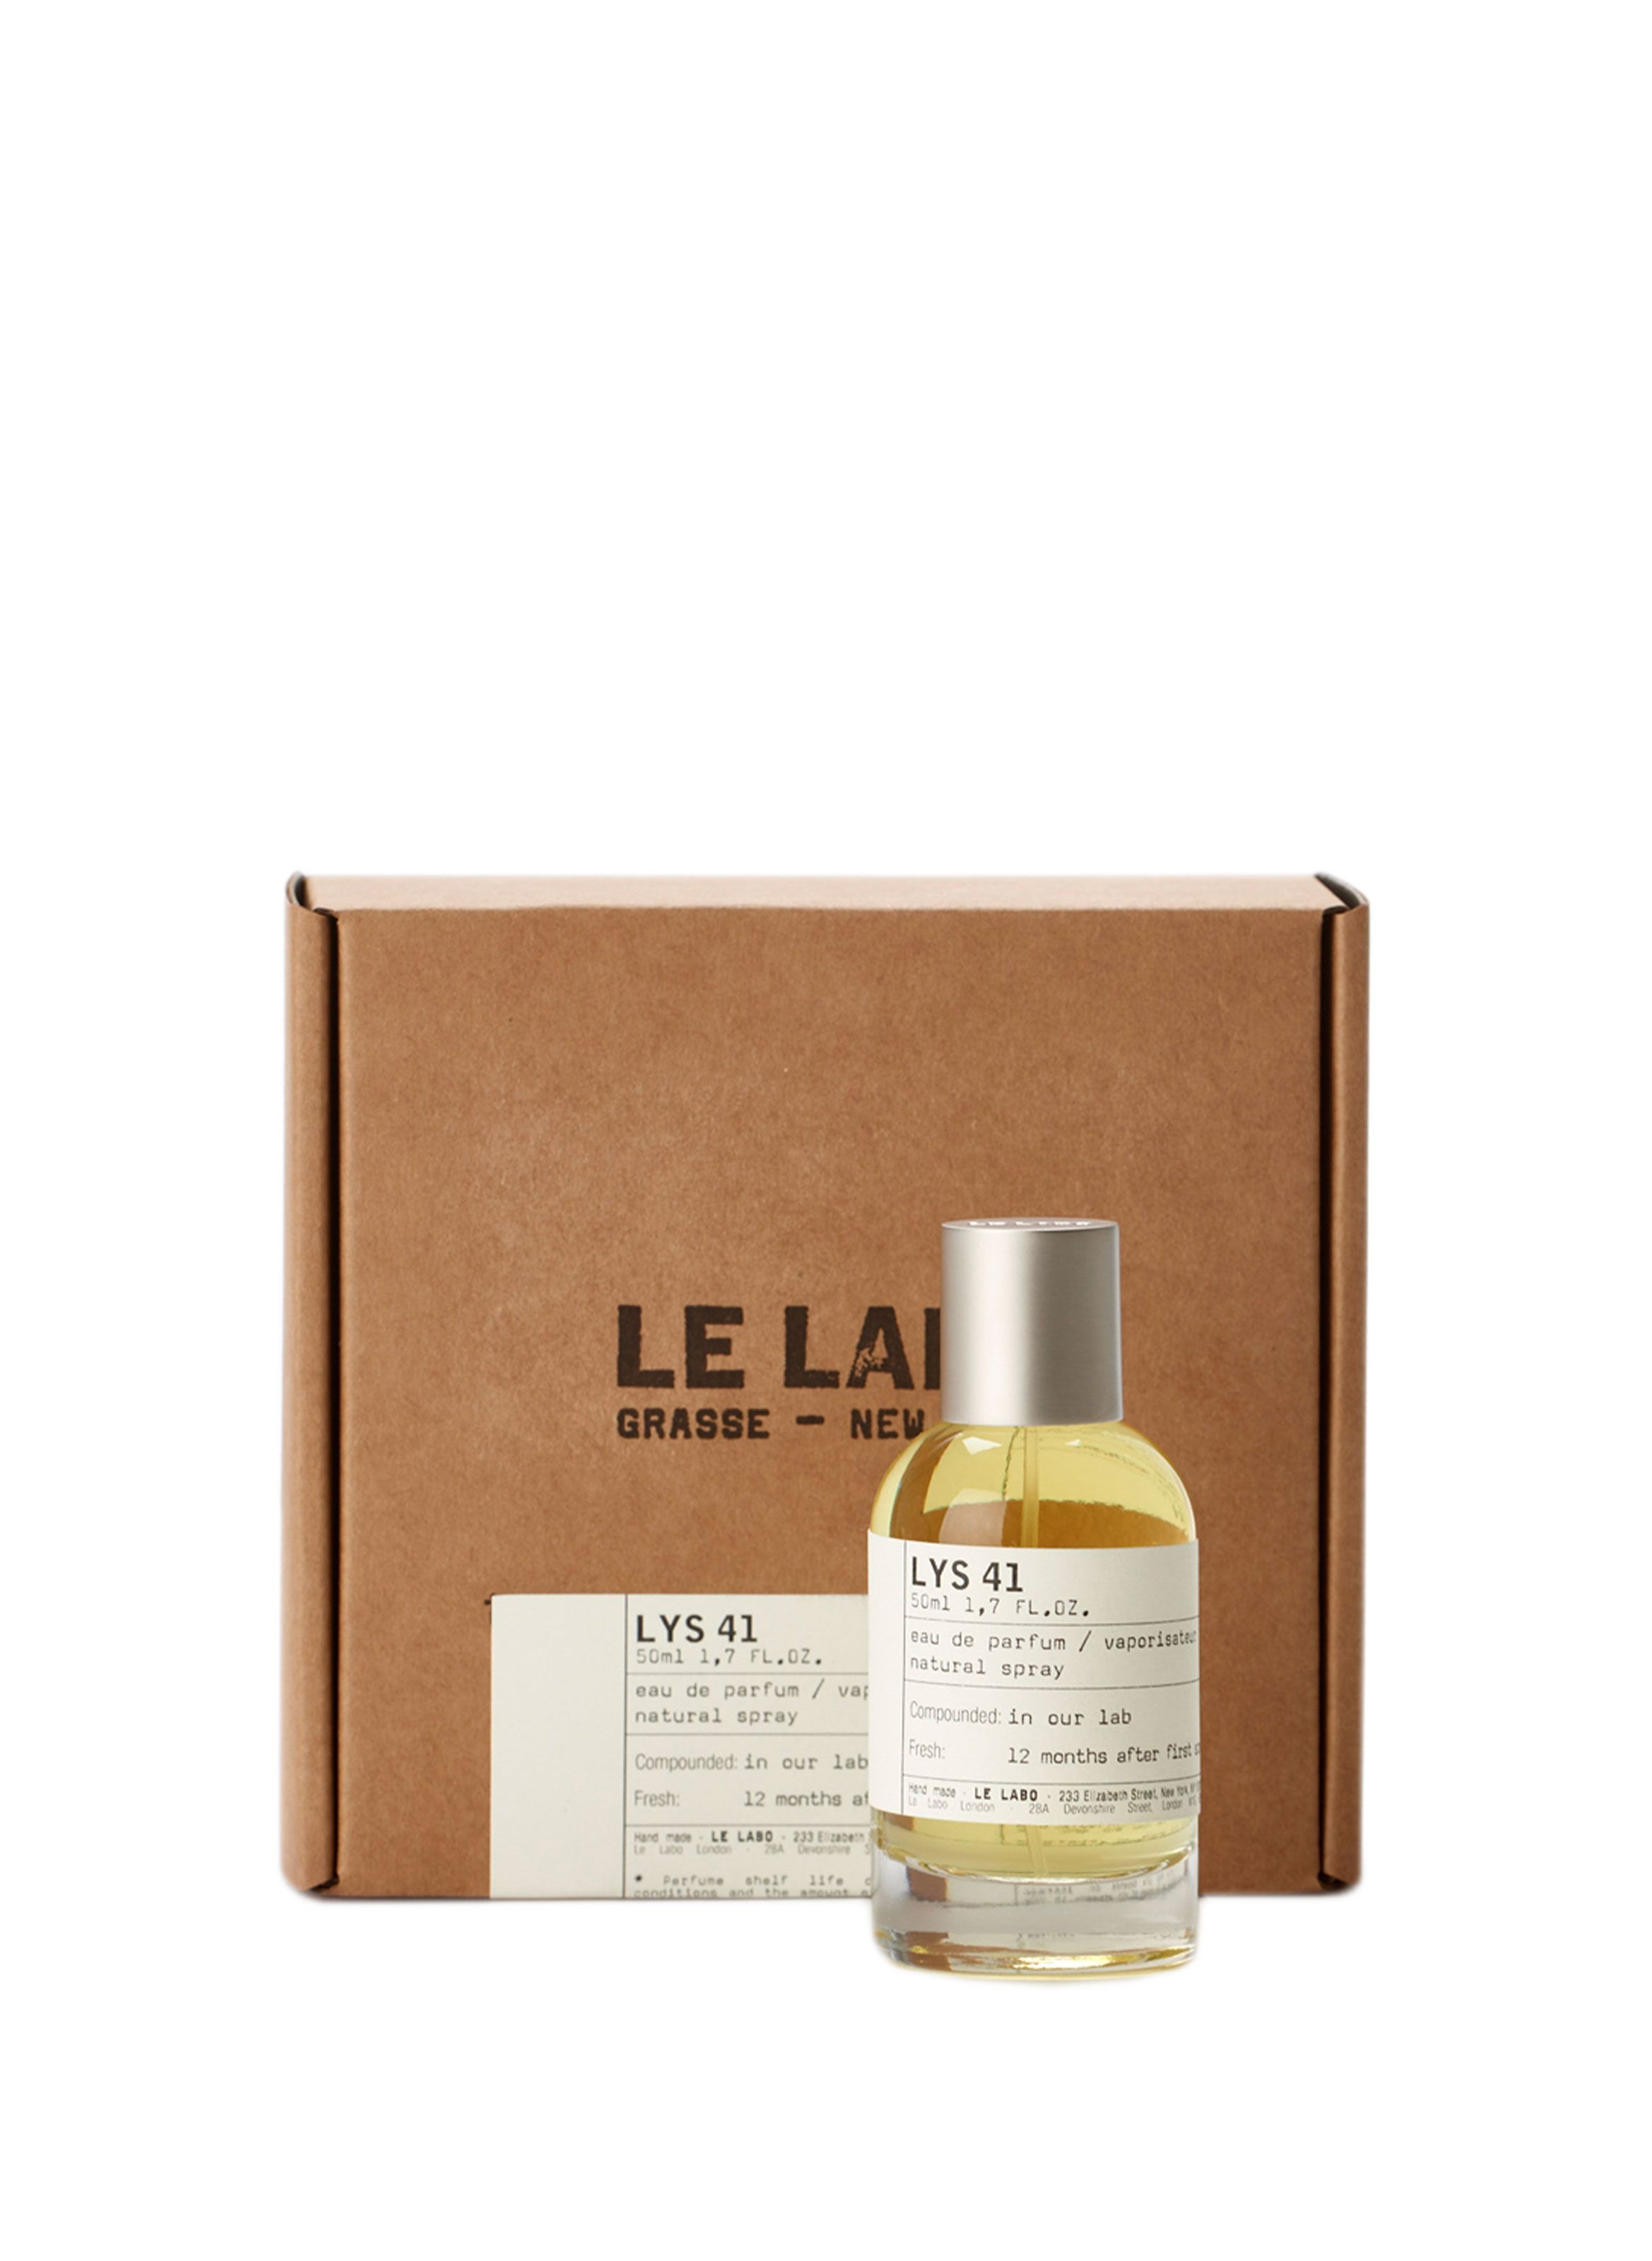 LYS 41 EAU DE PARFUM - LE LABO for BEAUTY | Printemps.com